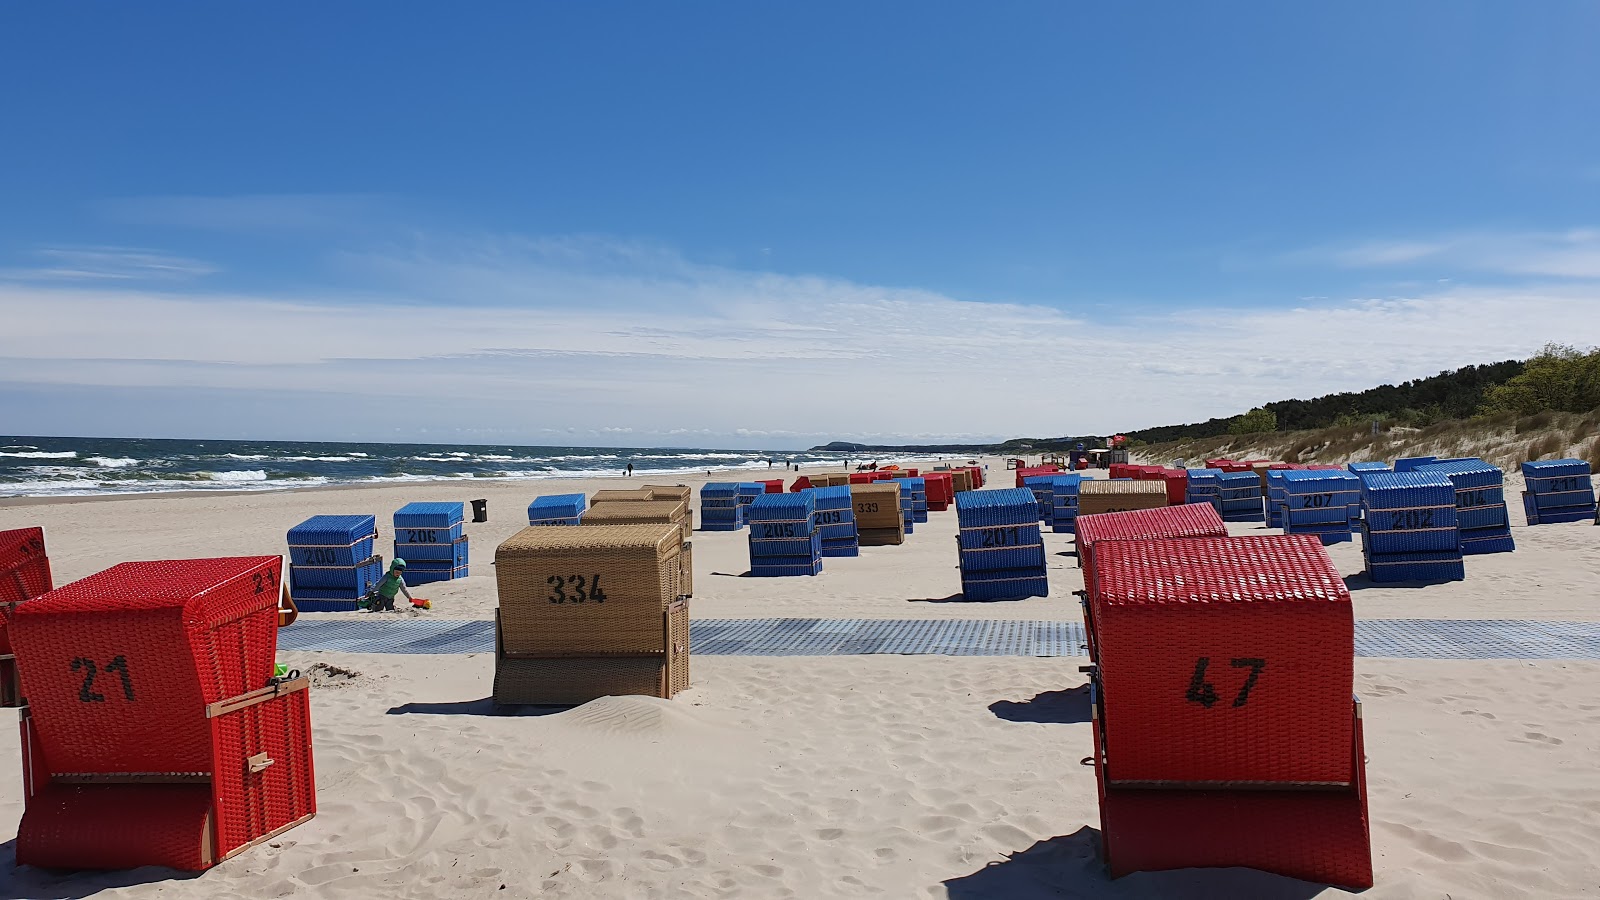 Foto af Trassenheide strand - populært sted blandt afslapningskendere